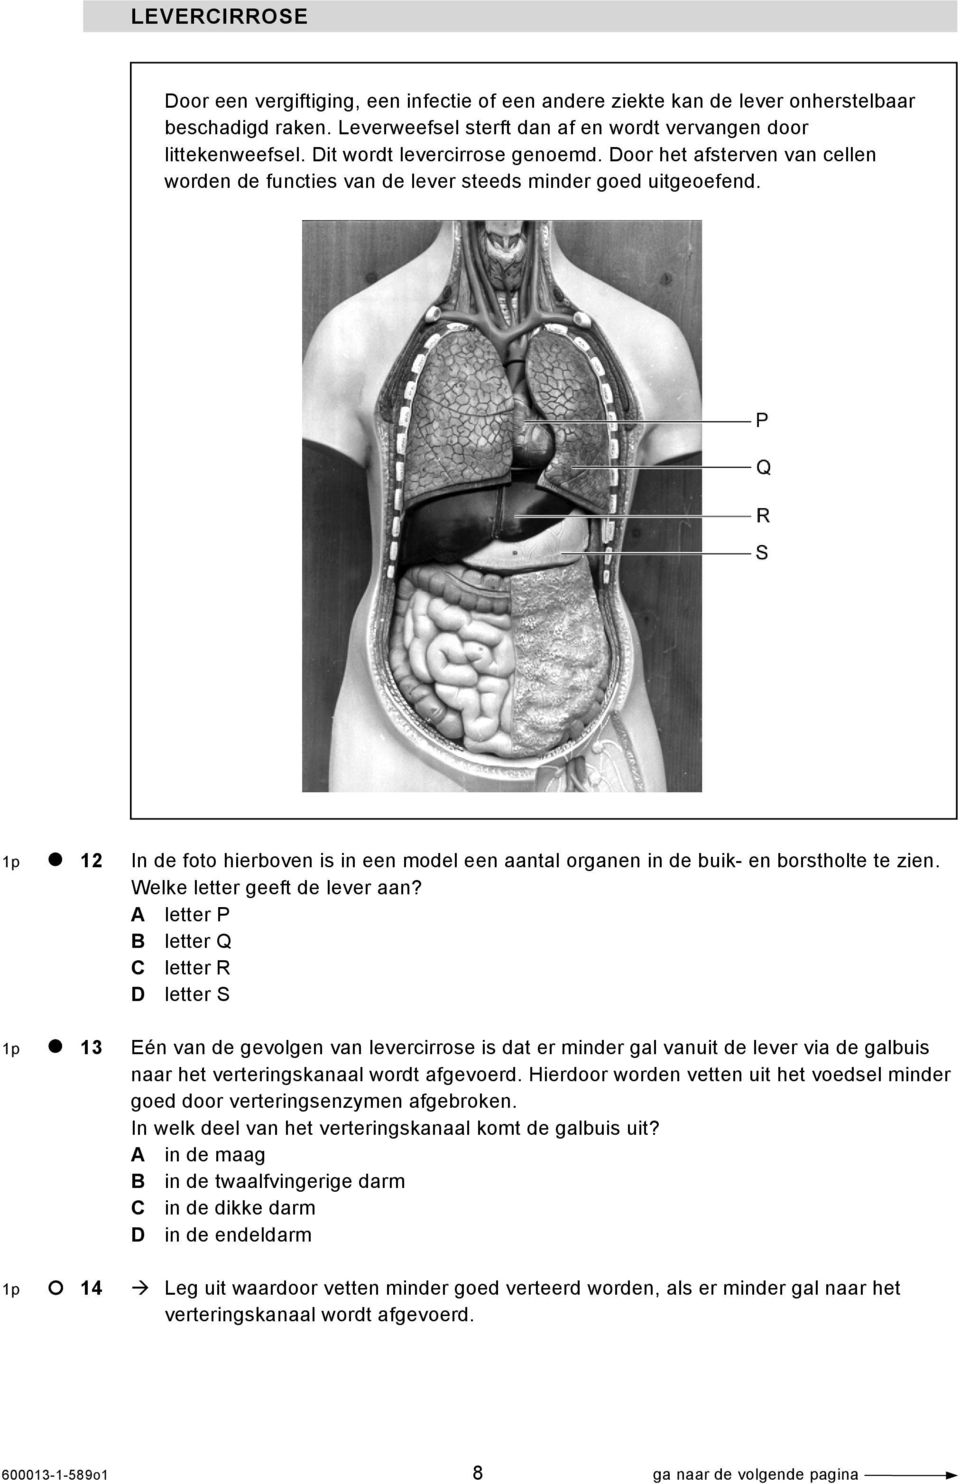 1p 12 In de foto hierboven is in een model een aantal organen in de buik- en borstholte te zien. Welke letter geeft de lever aan?